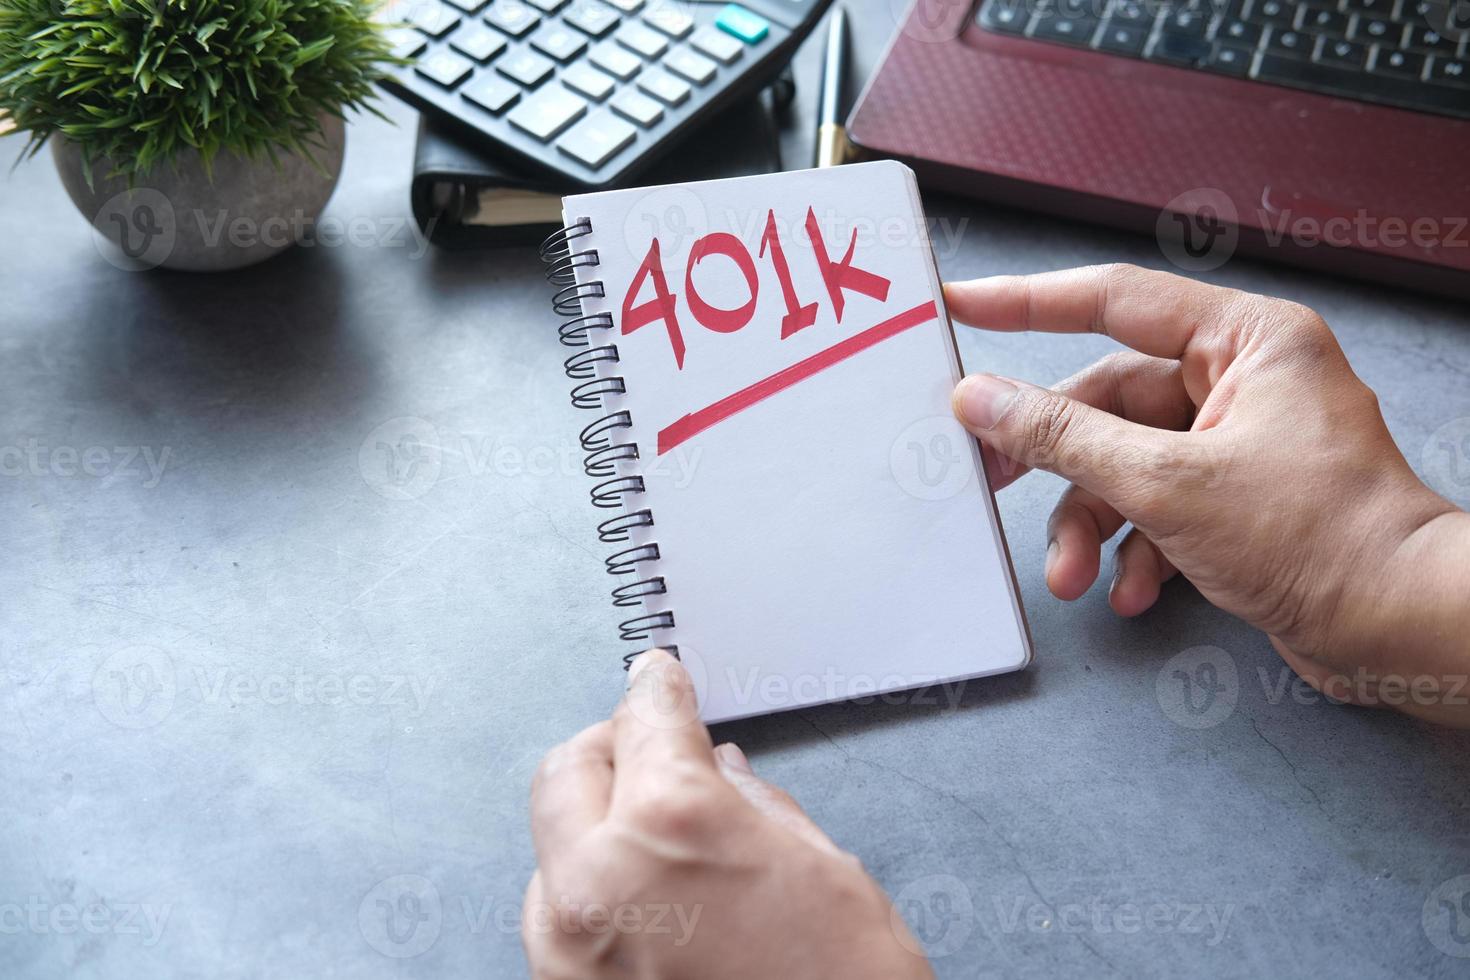 handhålla anteckningsblock med word 401k och bärbar dator på bordet foto